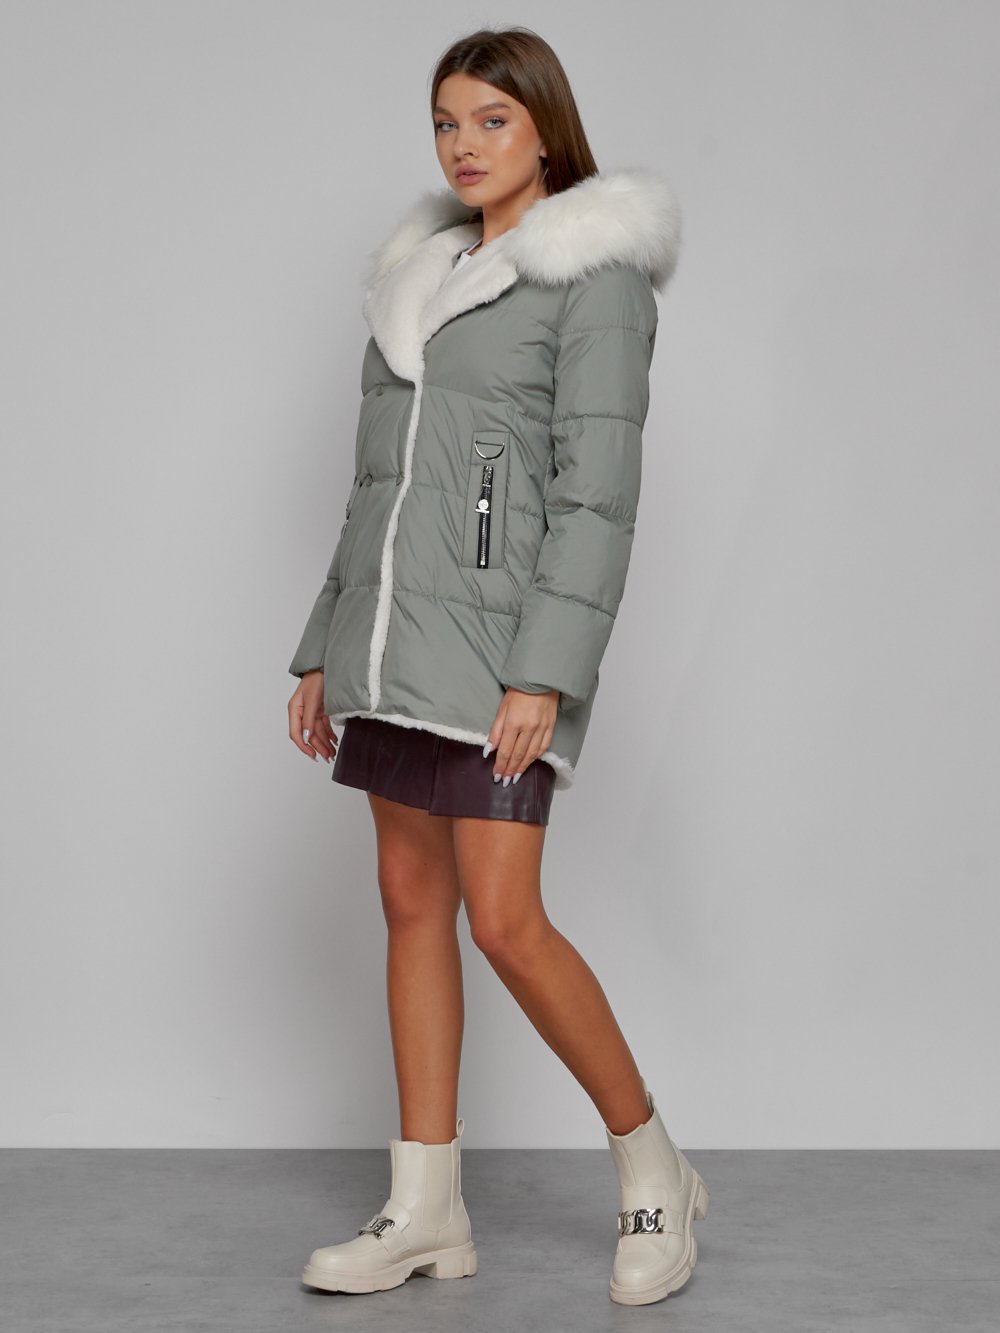 Купить куртку женскую оптом от производителя недорого в Москве 133120ZS 1